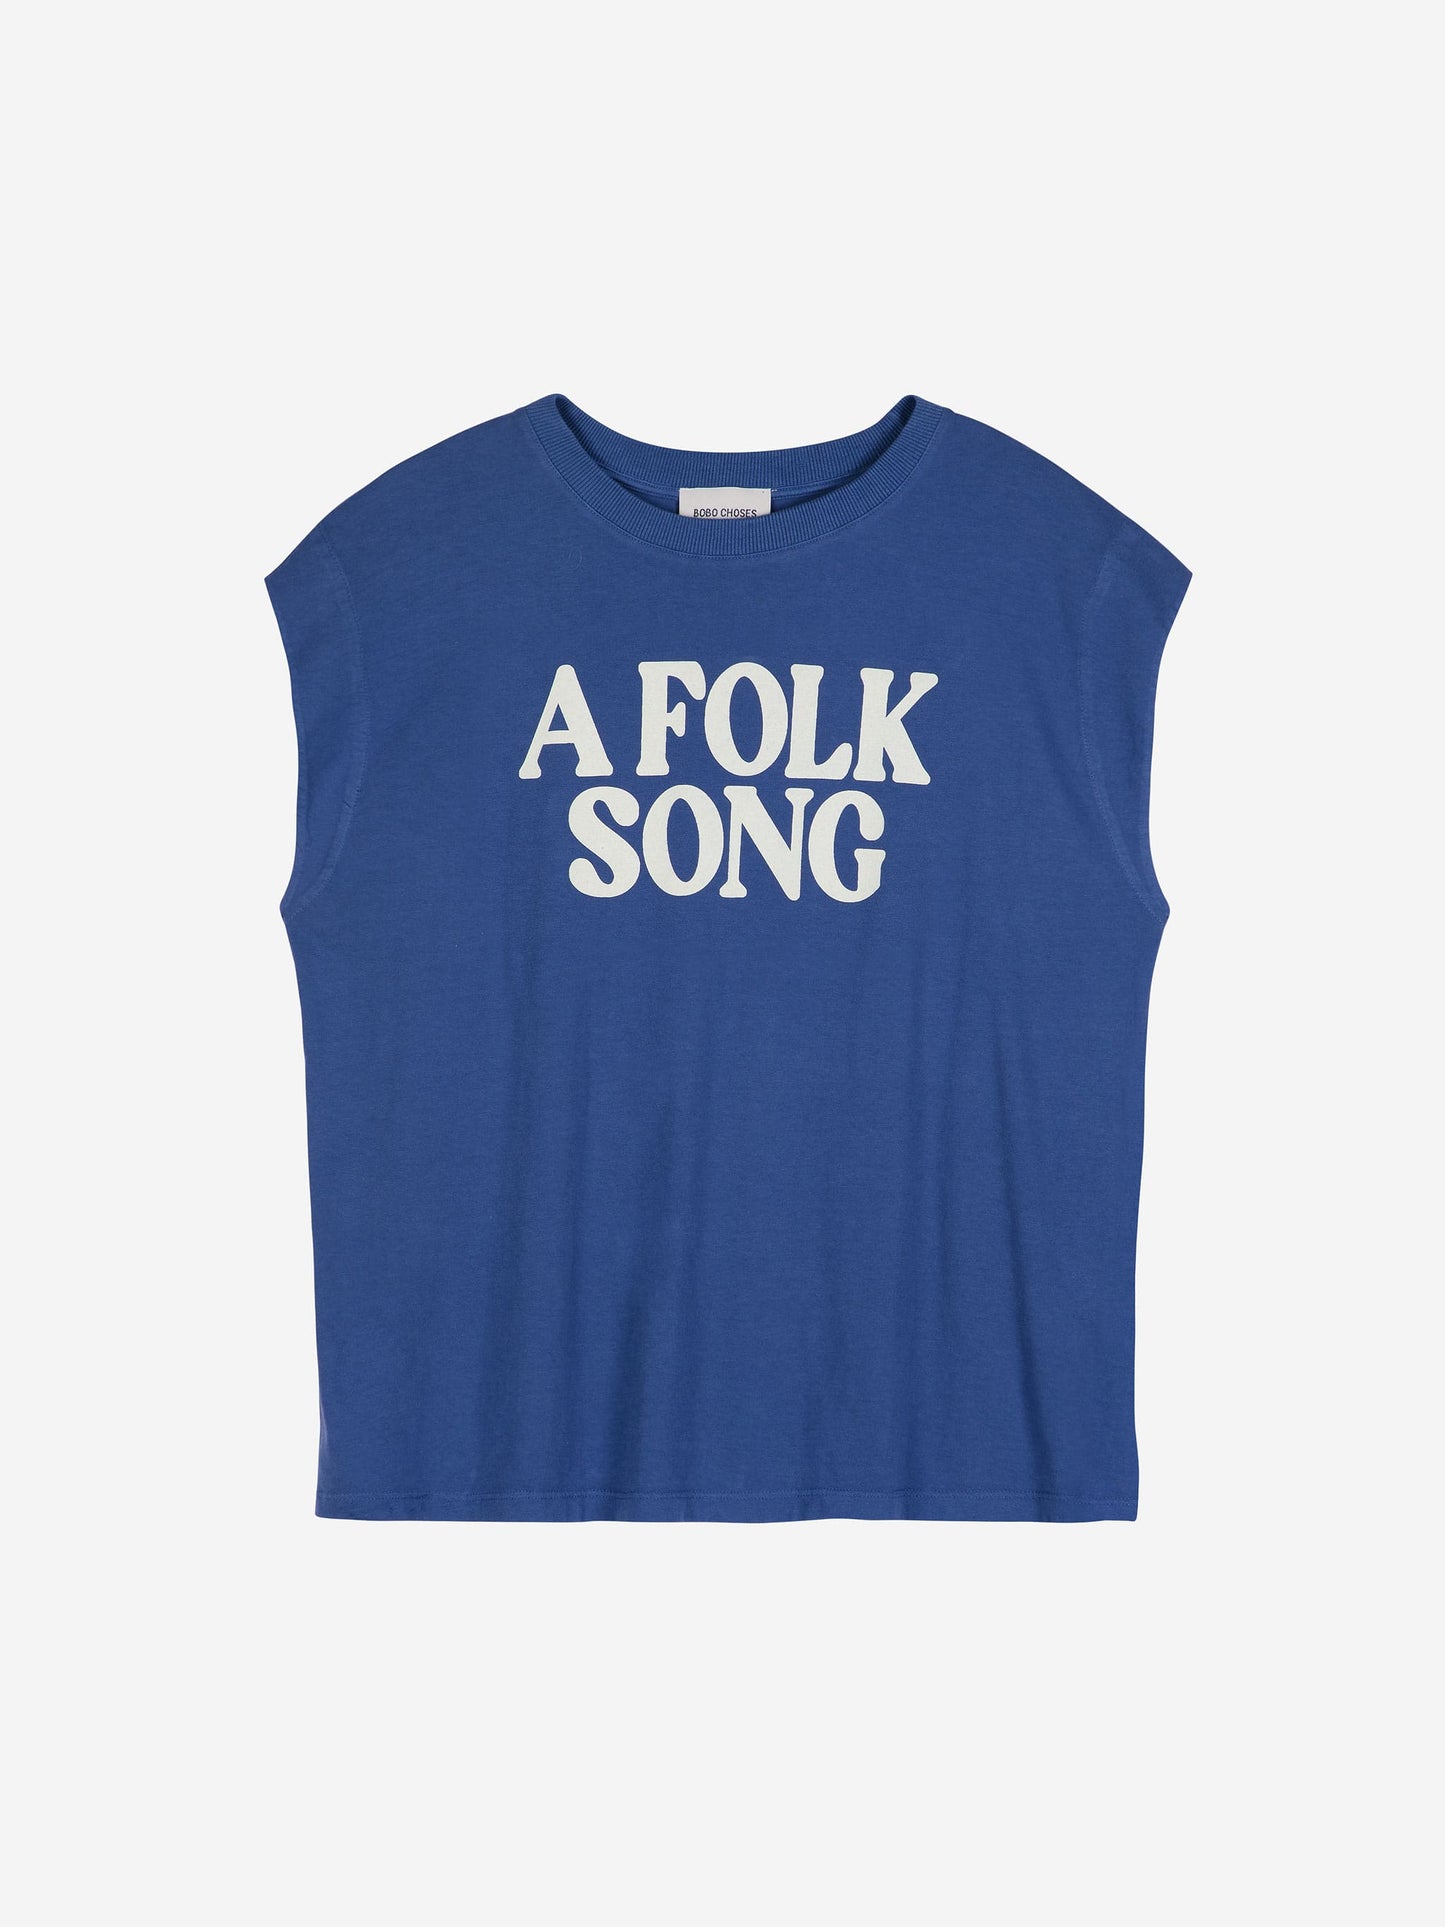 A folk song tank top